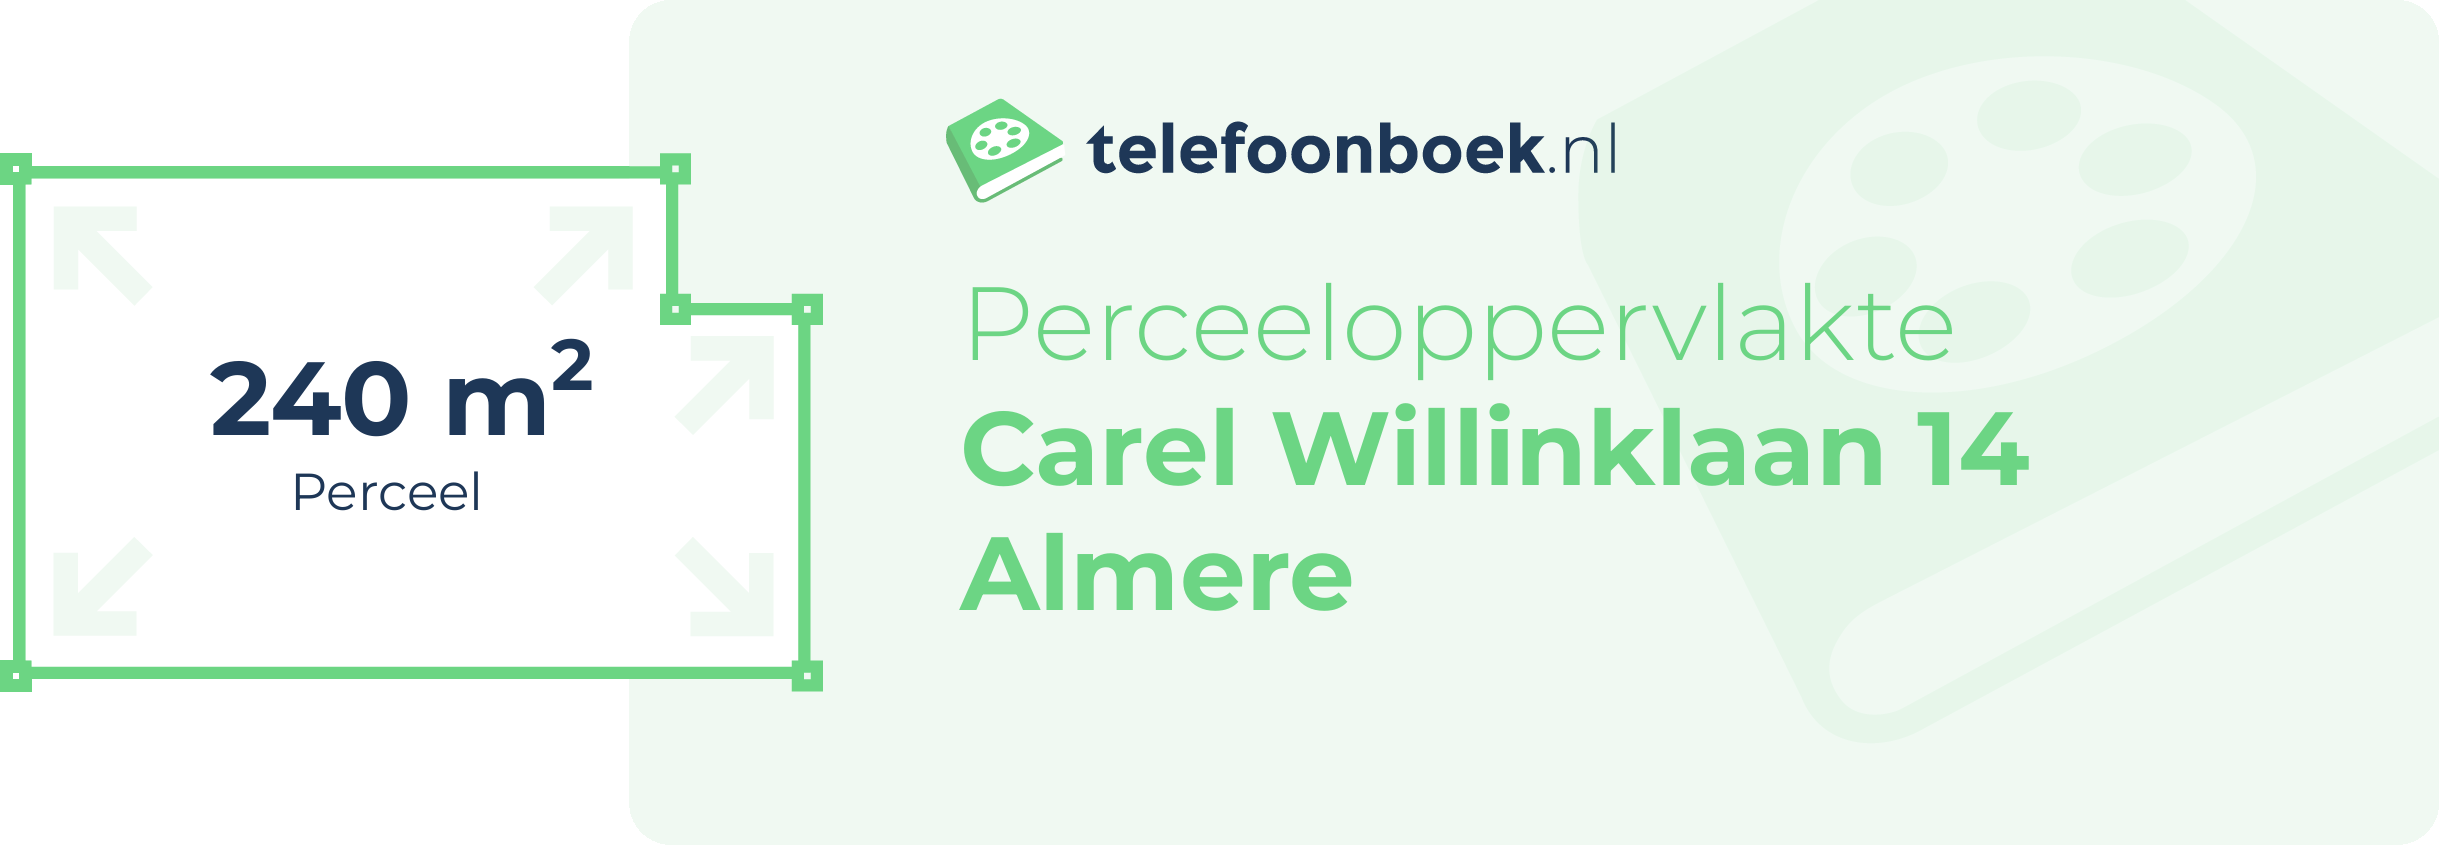 Perceeloppervlakte Carel Willinklaan 14 Almere